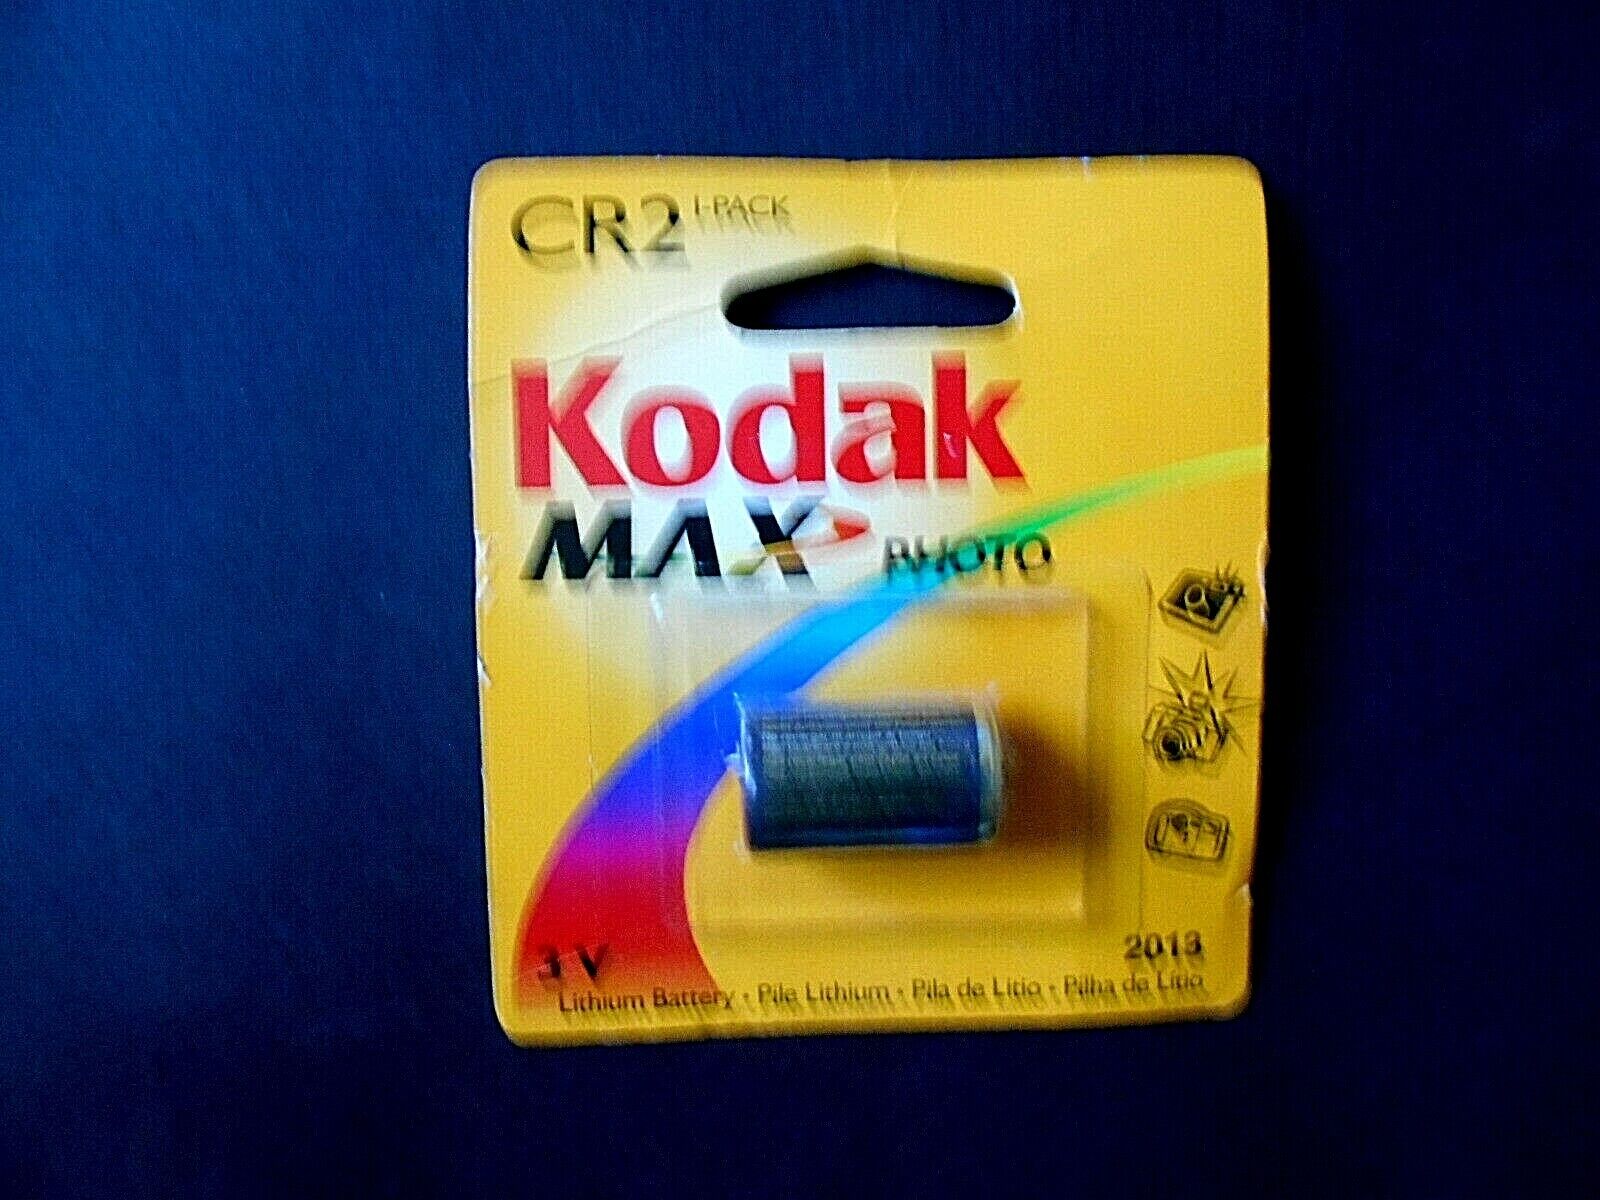 Kodak Popular brand Max CR2 Large special price 3V Battery Photo